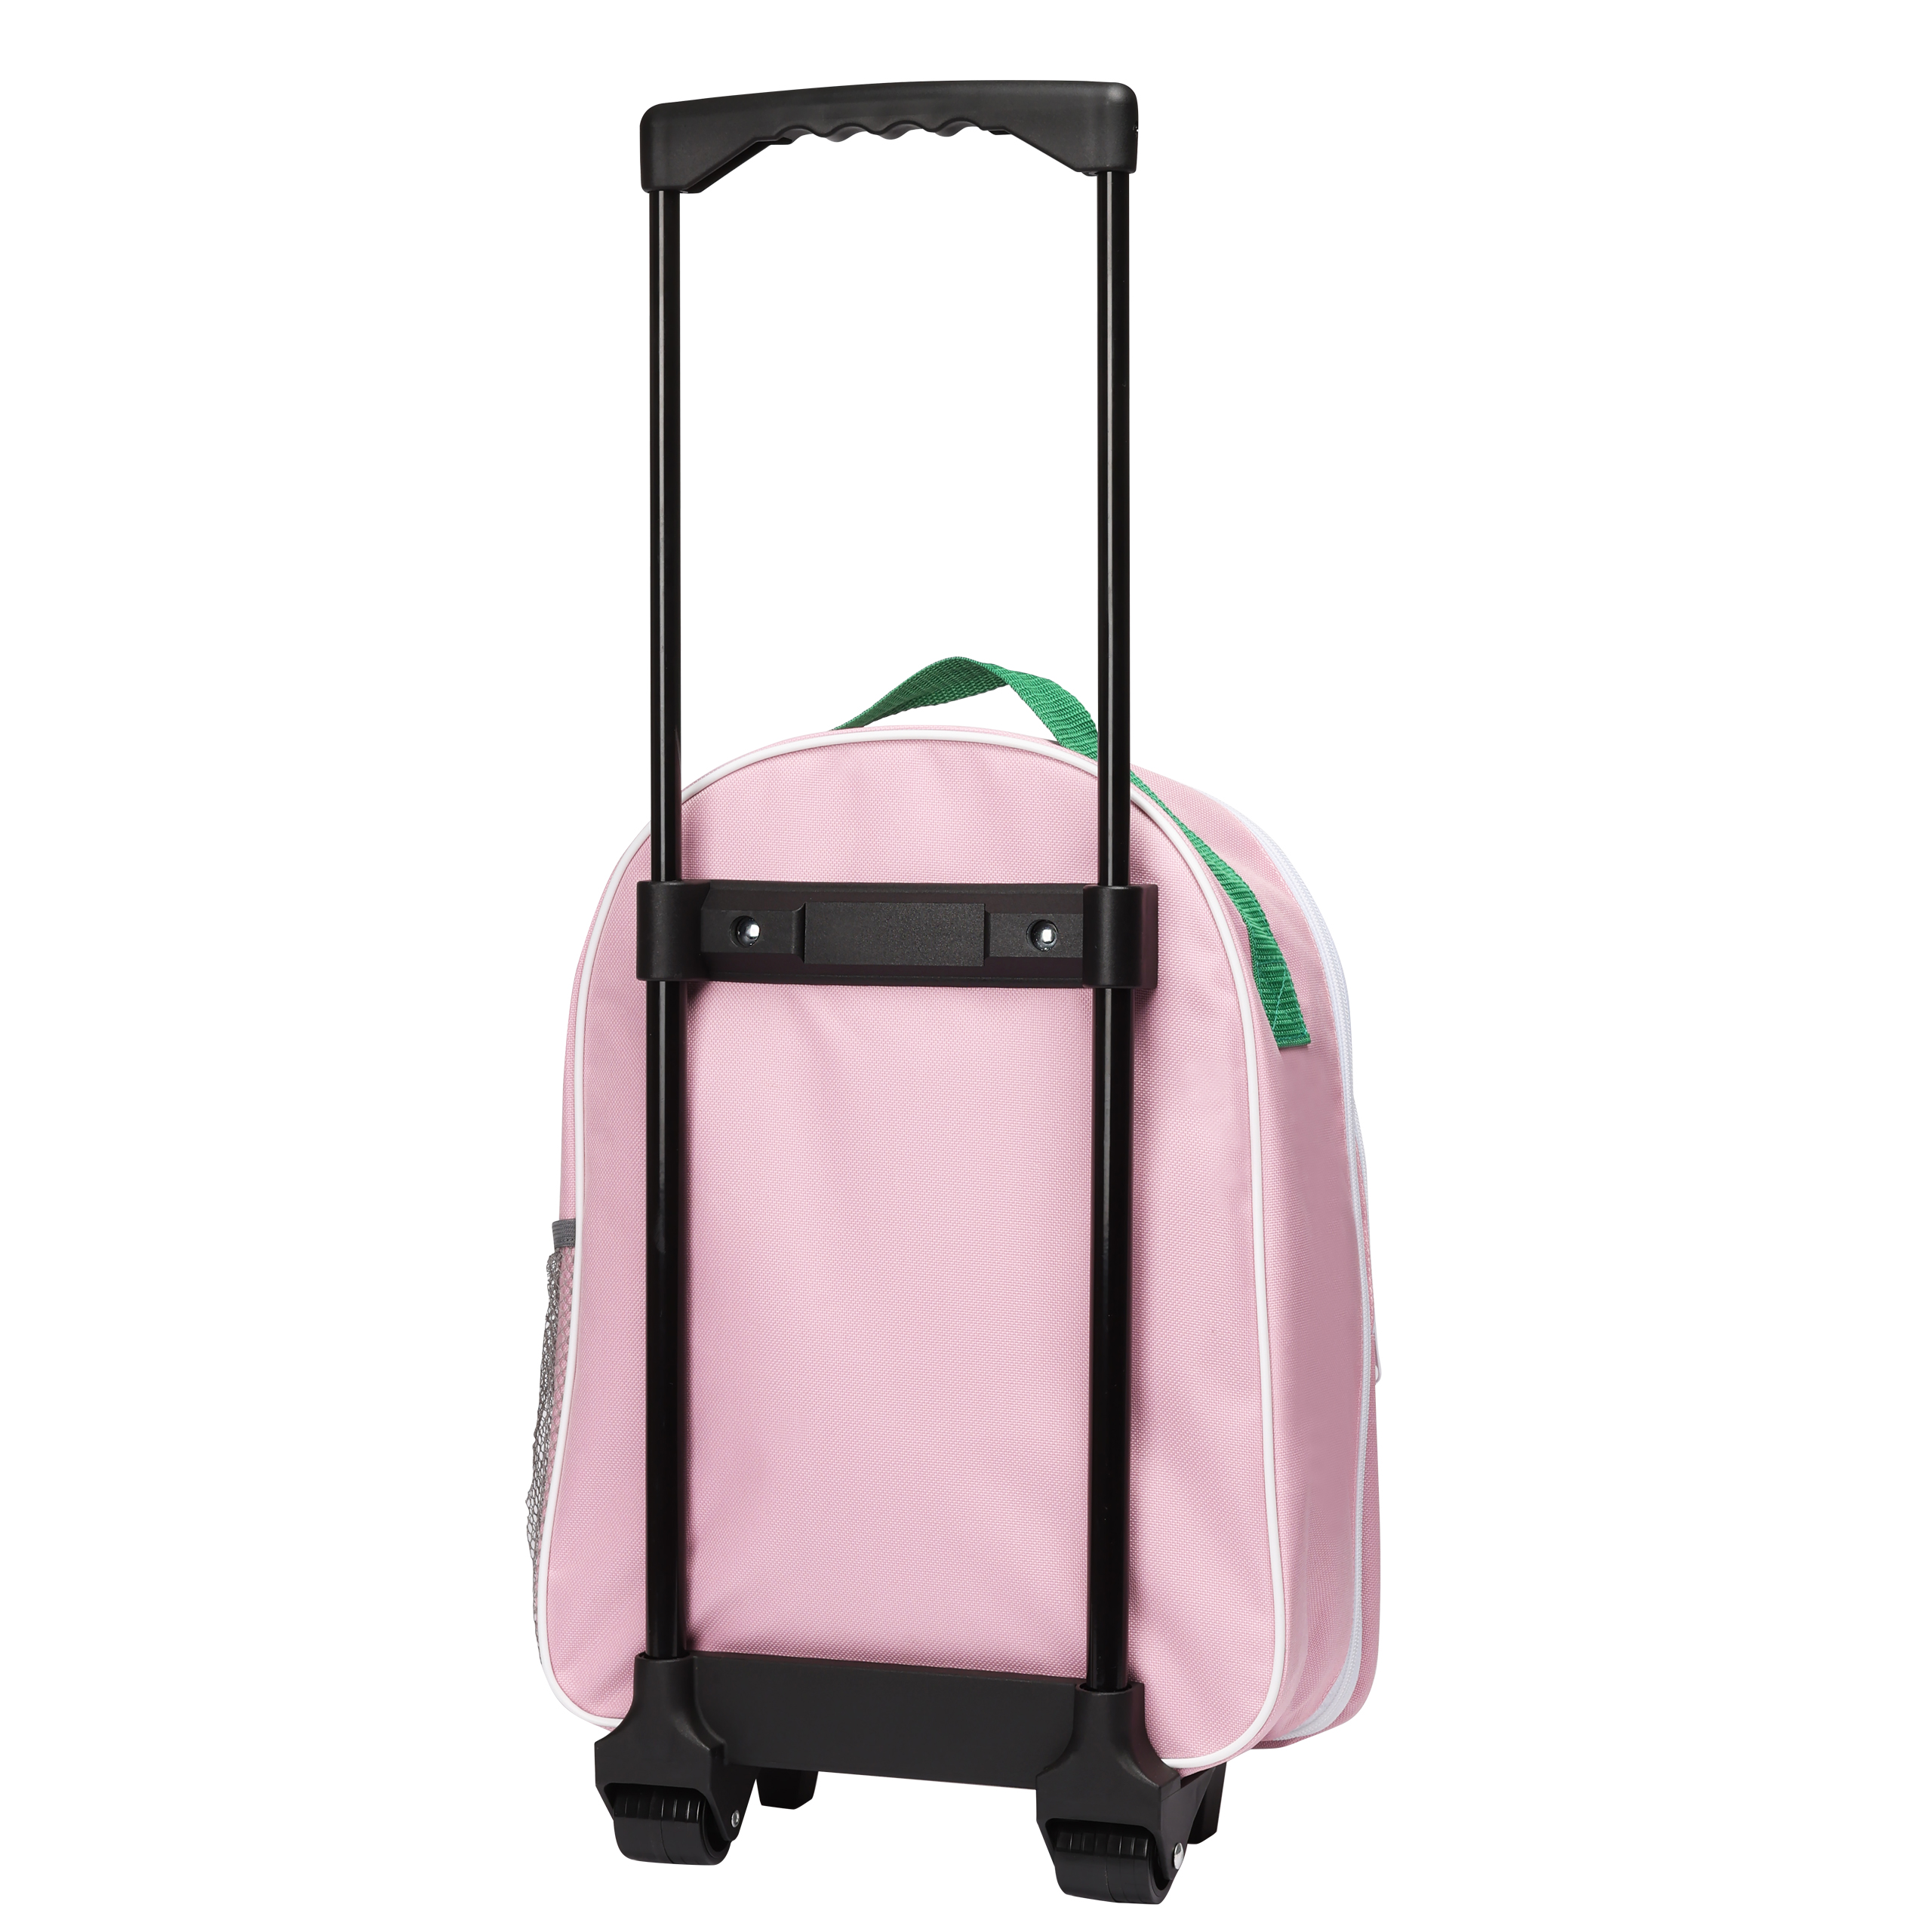 Pippi pippi kids bag travel bag pink